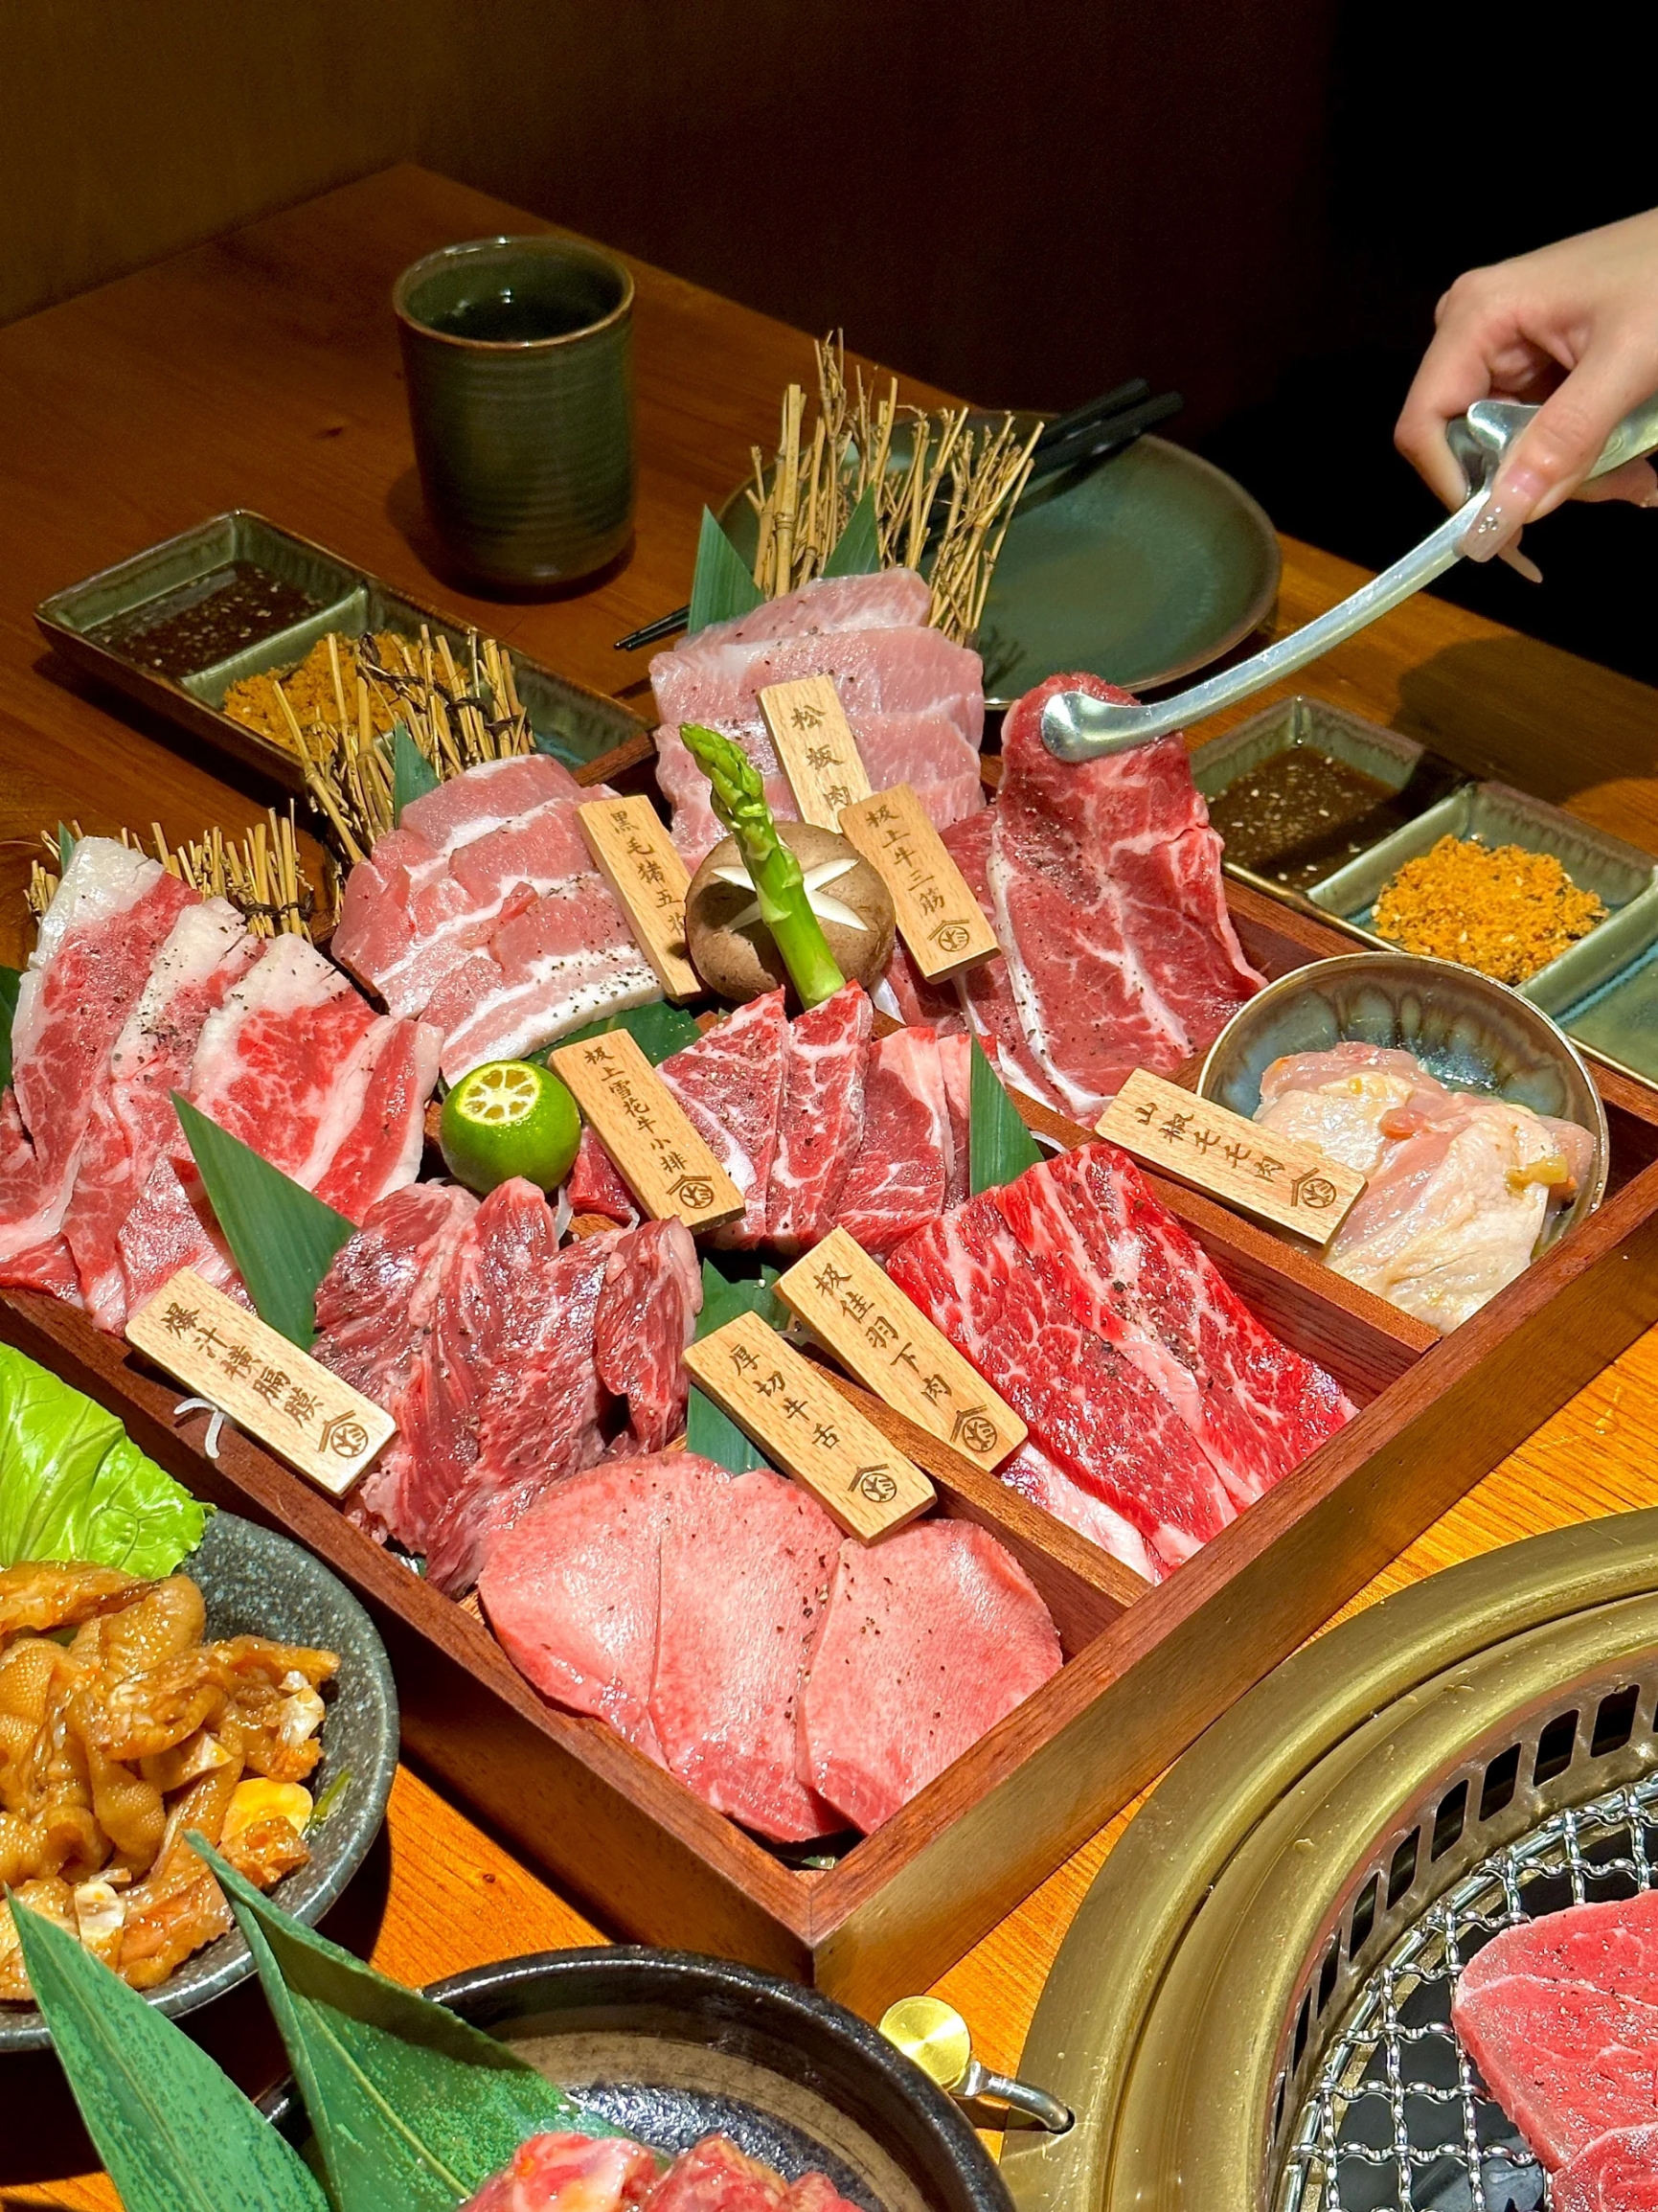 东平 种草!在惠州挖到好吃的日式烧肉!! 吉之岛旁边新开的日式炭火烧肉! 门口的红白灯笼木质招牌 很